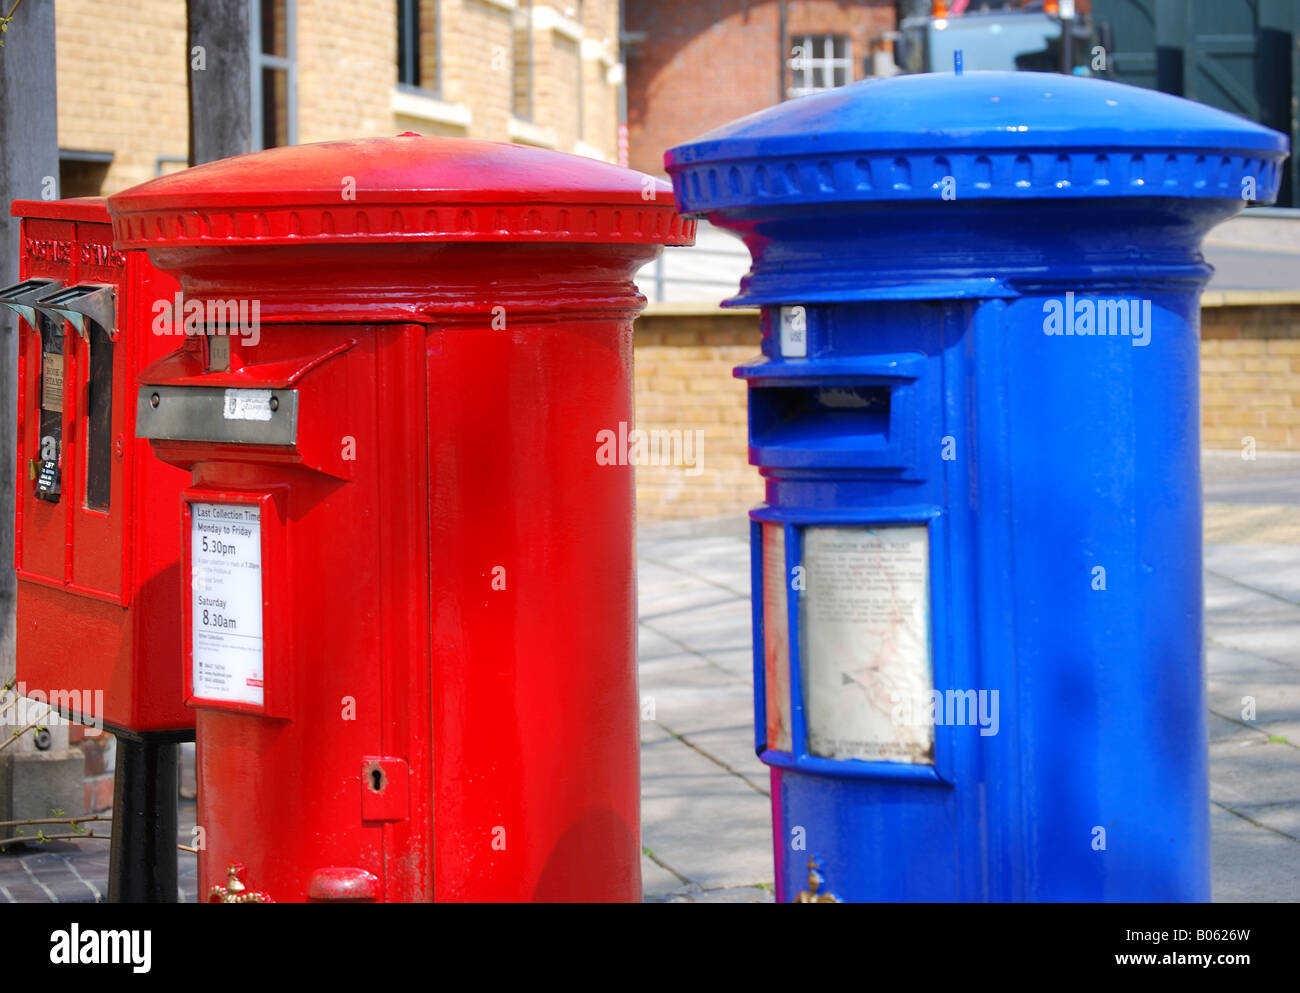 Rouge et bleu airmail boîtes aux lettres, High Street, Windsor, Berkshire, Angleterre, Royaume-Uni Banque D'Images